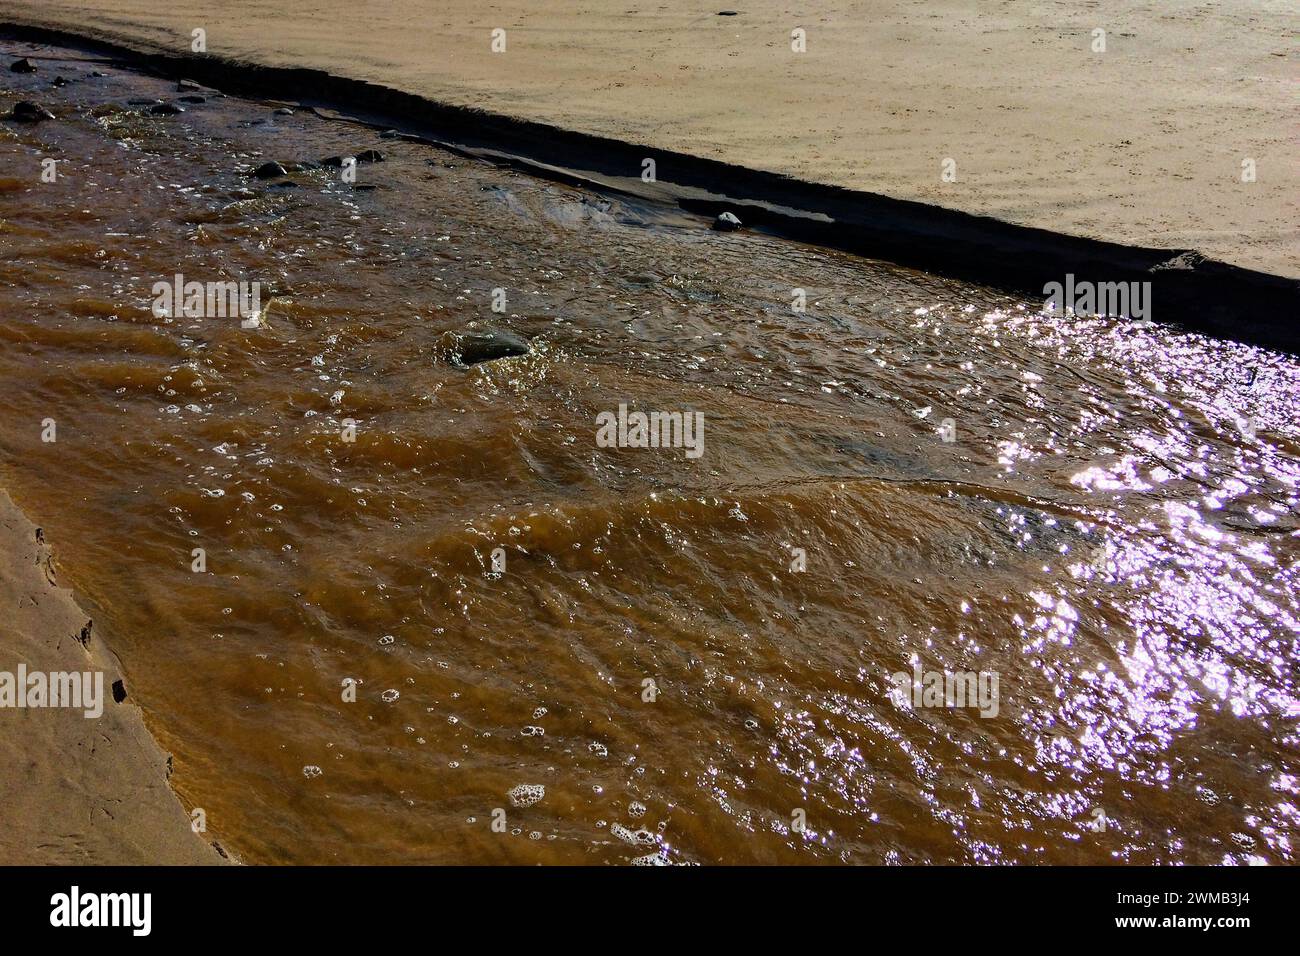 Das Bild zeigt einen schlammigen Bach, der über eine sandige Oberfläche fließt, wobei das Sonnenlicht den nassen Schlamm und das Wasser reflektiert. Stockfoto